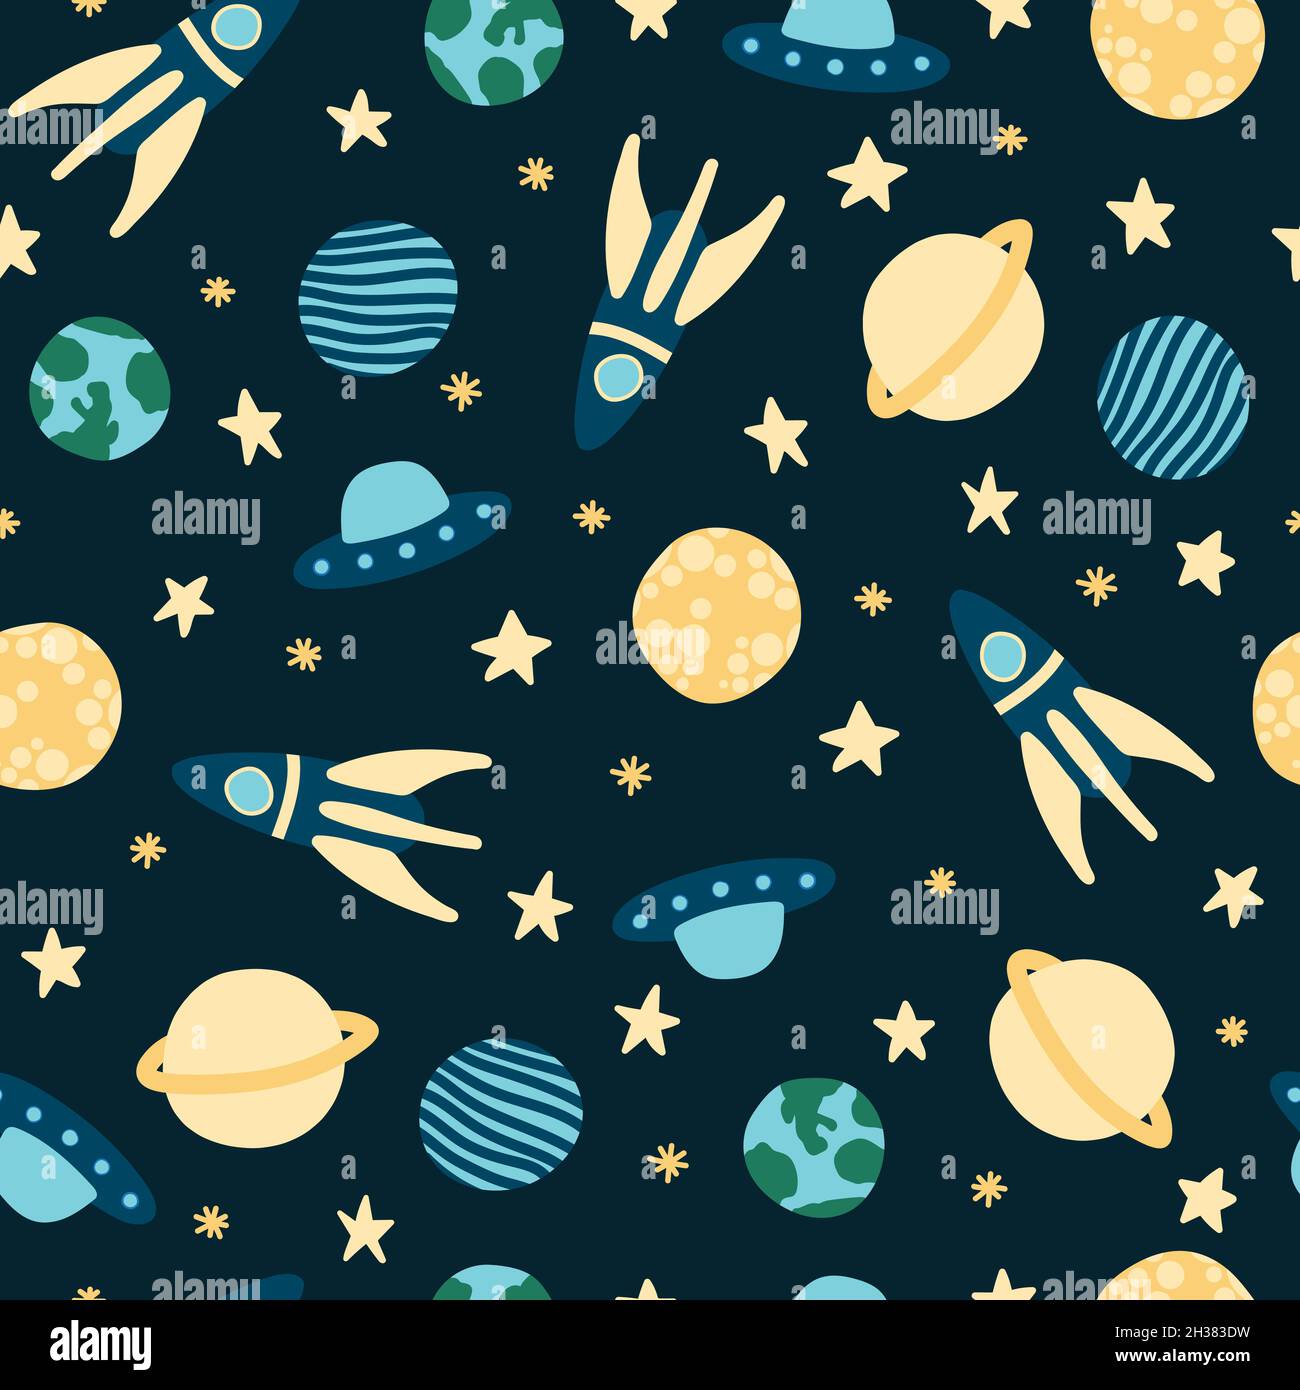 Nahtlose Muster Vektor-Design des Raums, mit Sternen, Raketen, Raumschiffe und Planeten im Universum mit einem kindischen und Doodle-Stil mit blau Stock Vektor